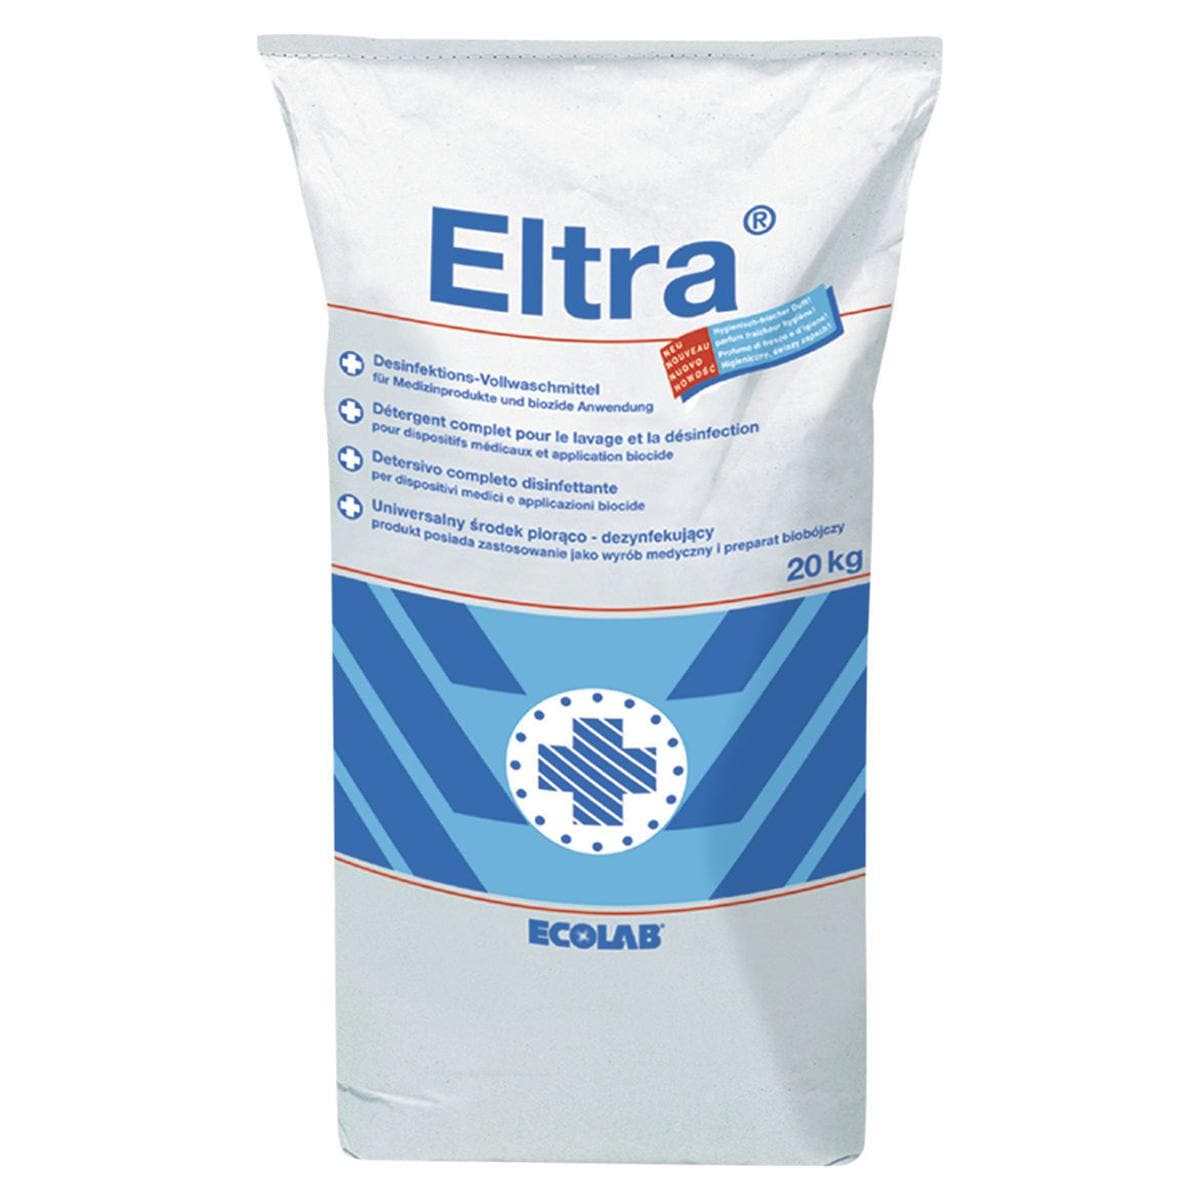 Eltra® - Packung 20 kg